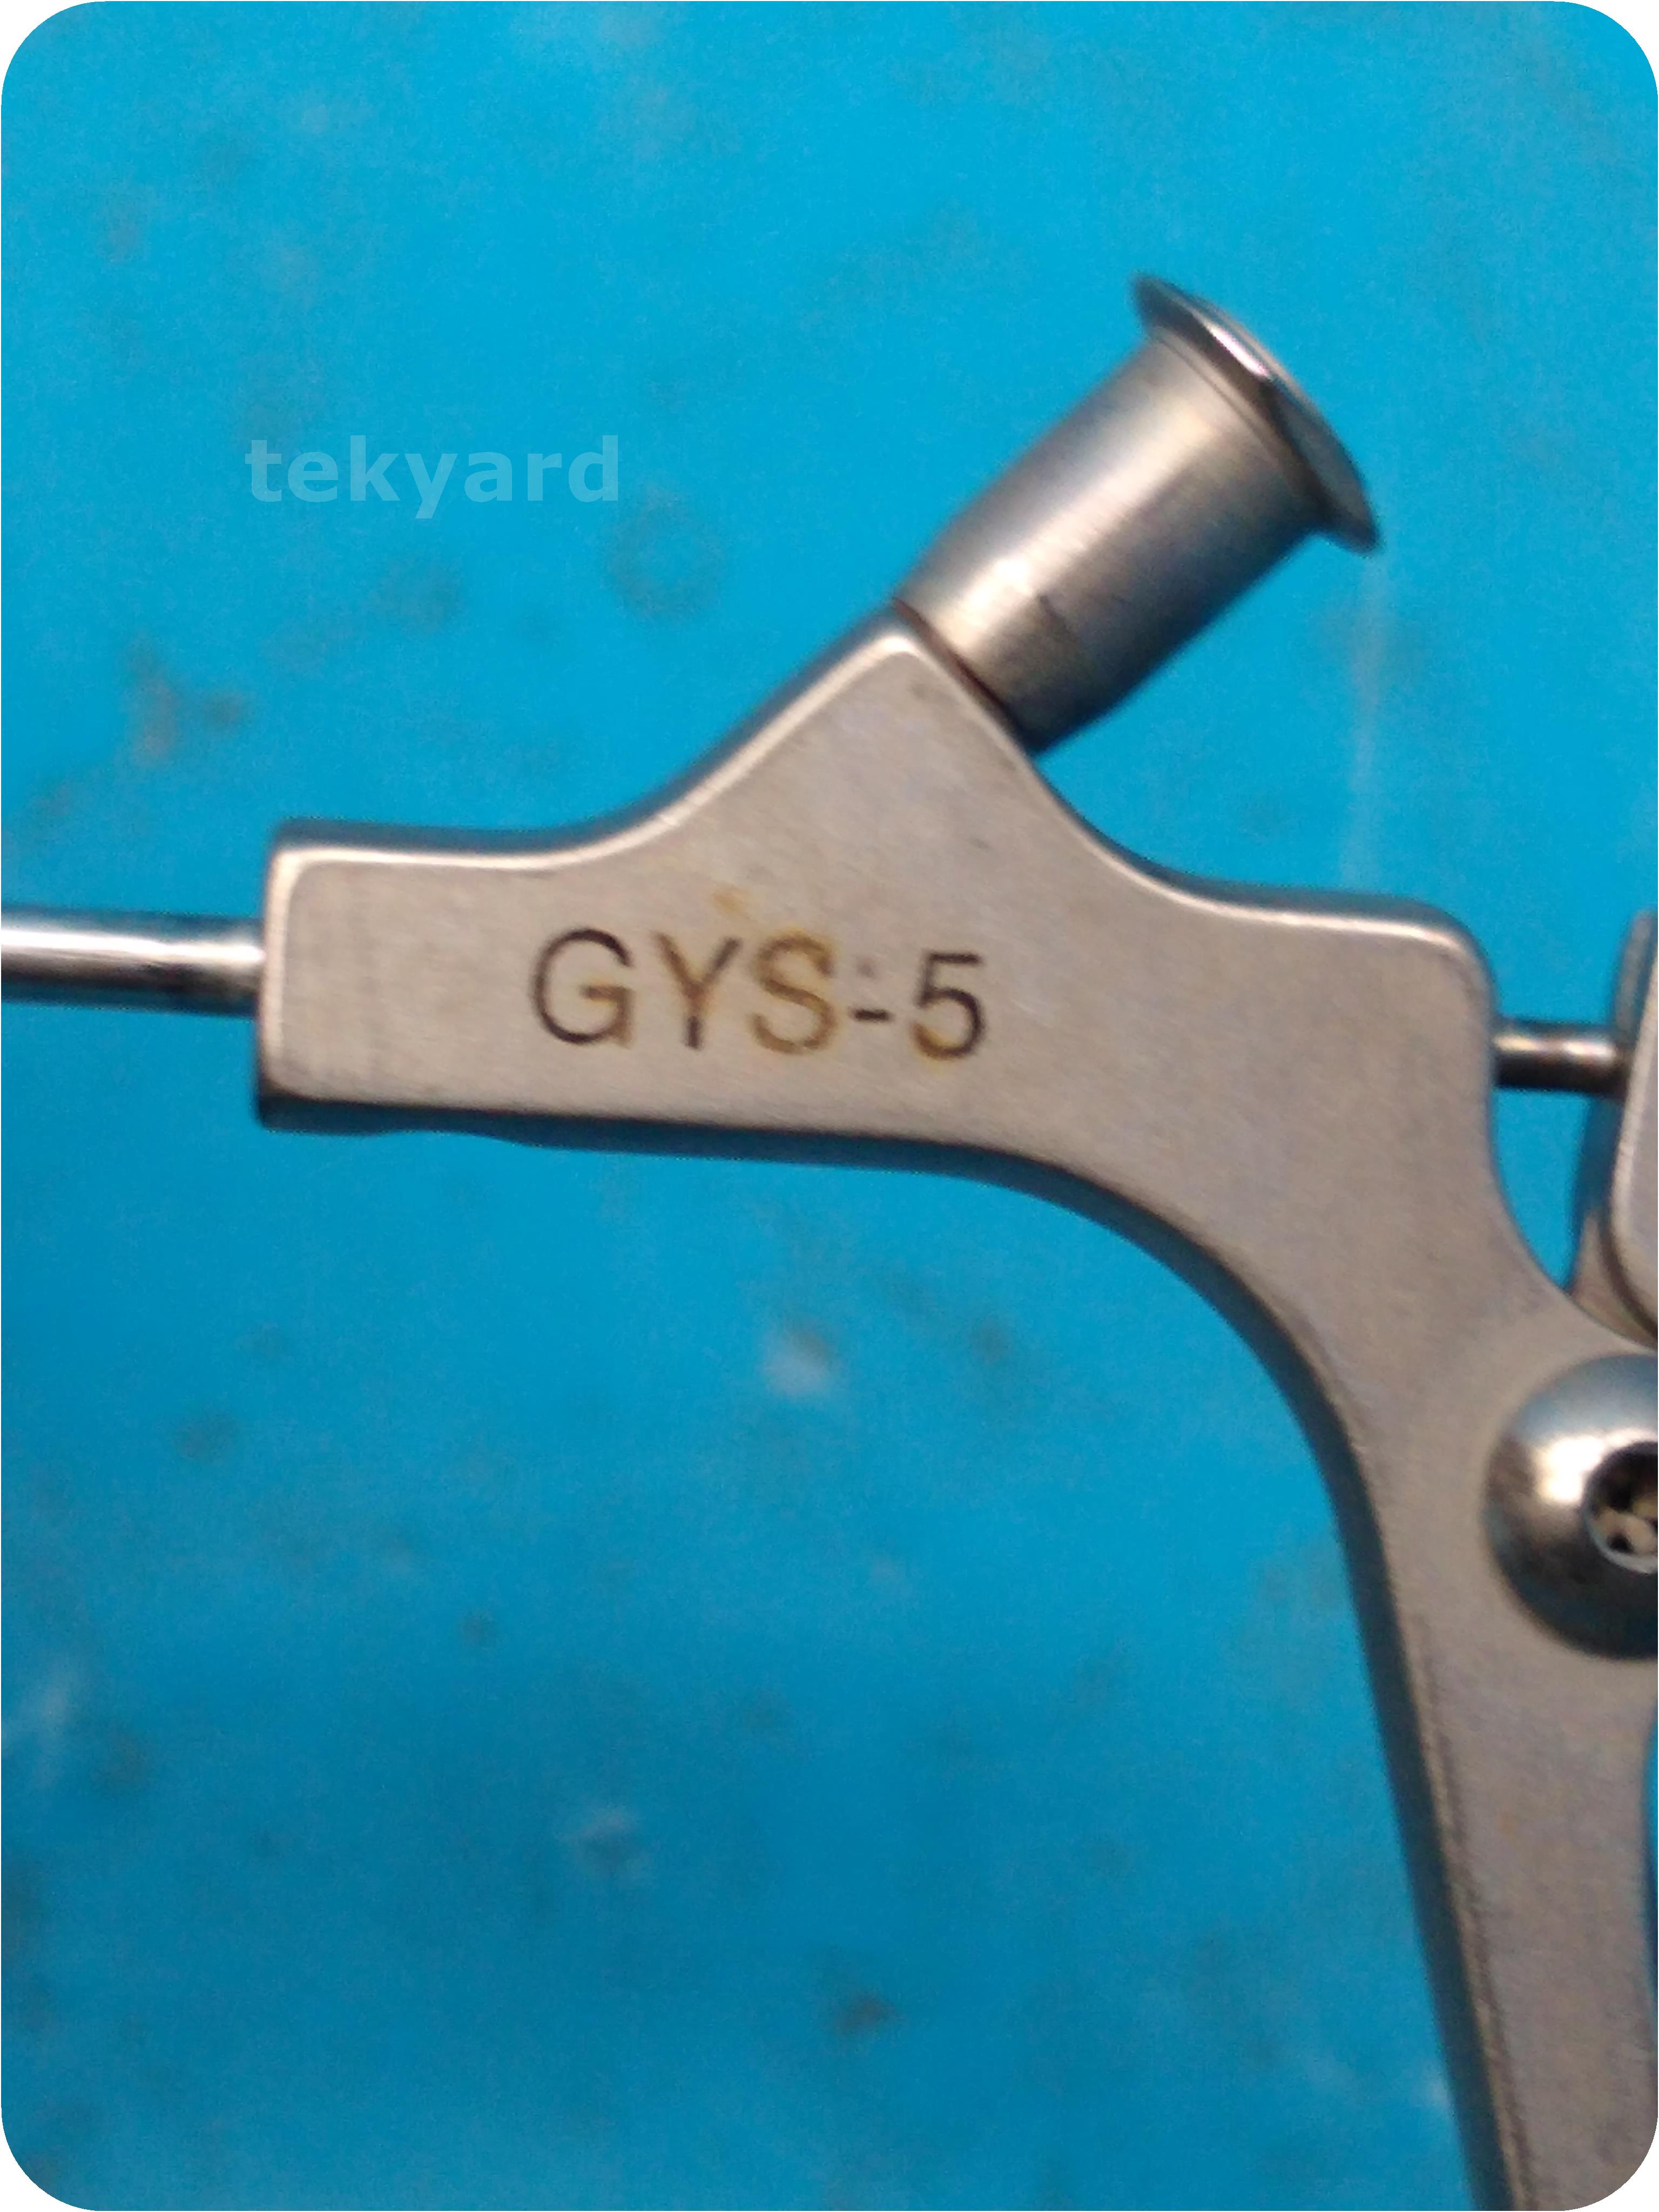 tekyard, LLC. - 268451-Gyrus ACMI GYS-5, GYB-5, GYA-5 Semi Rigid